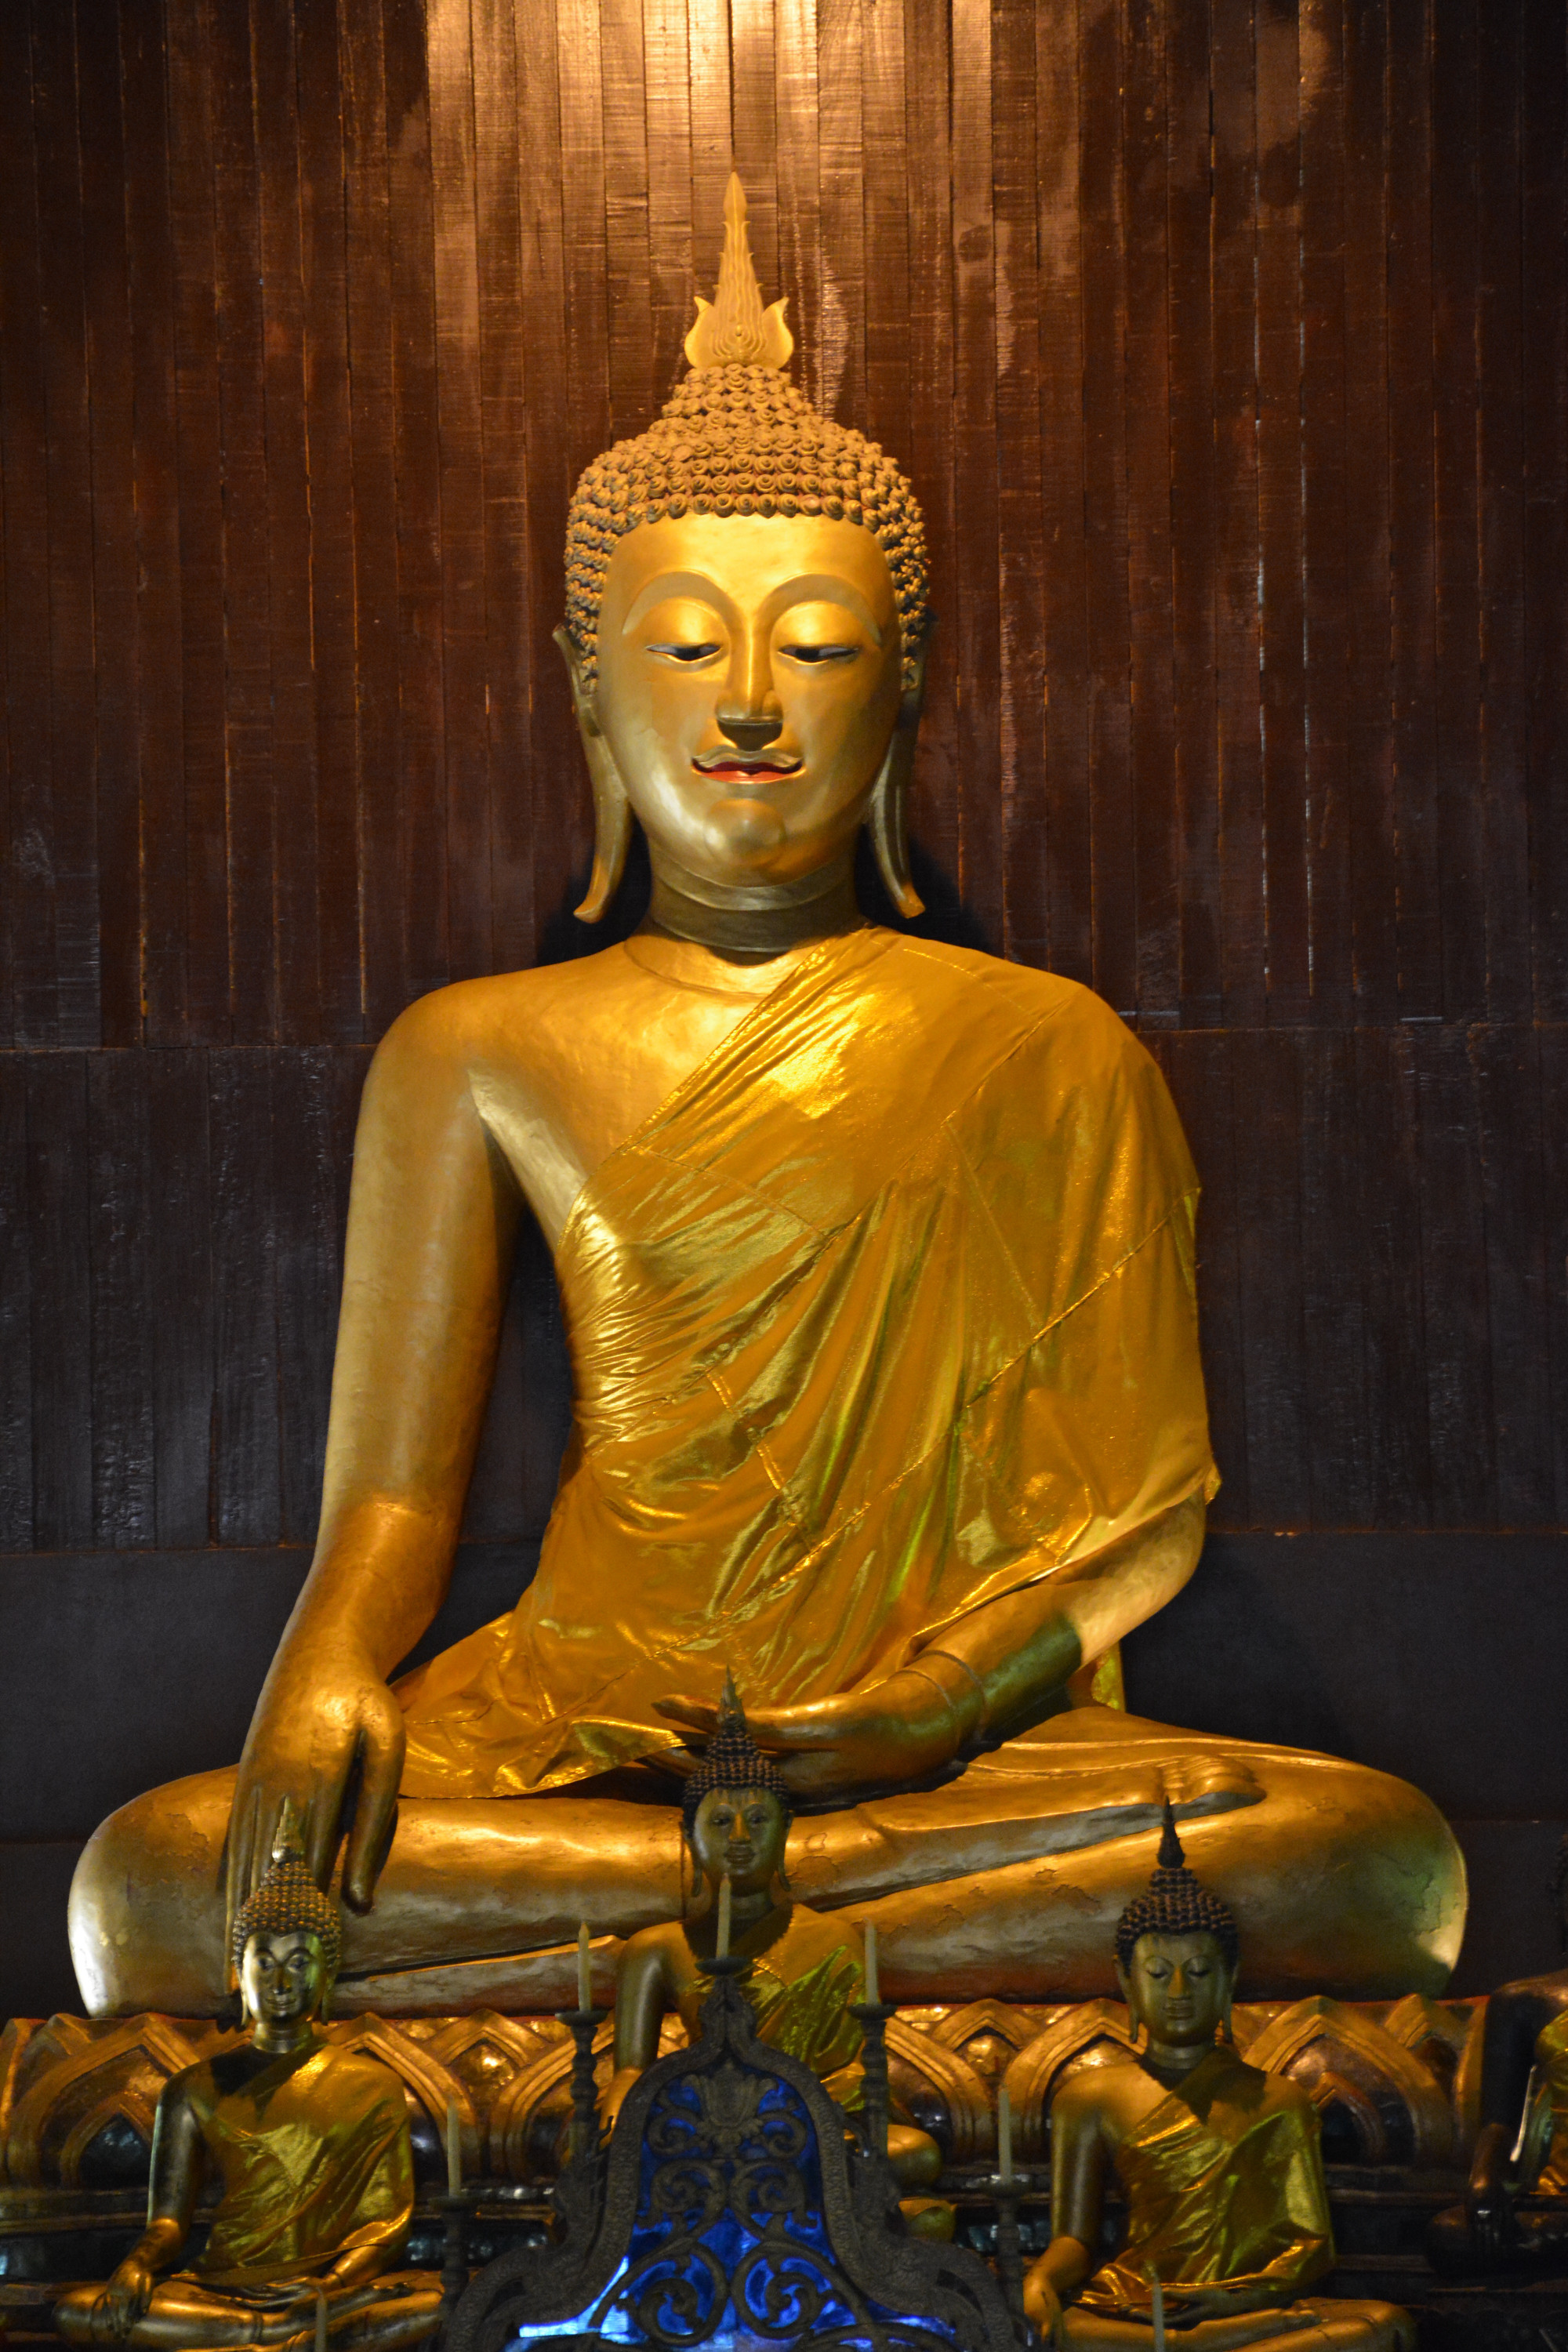 Another Golden Buddha